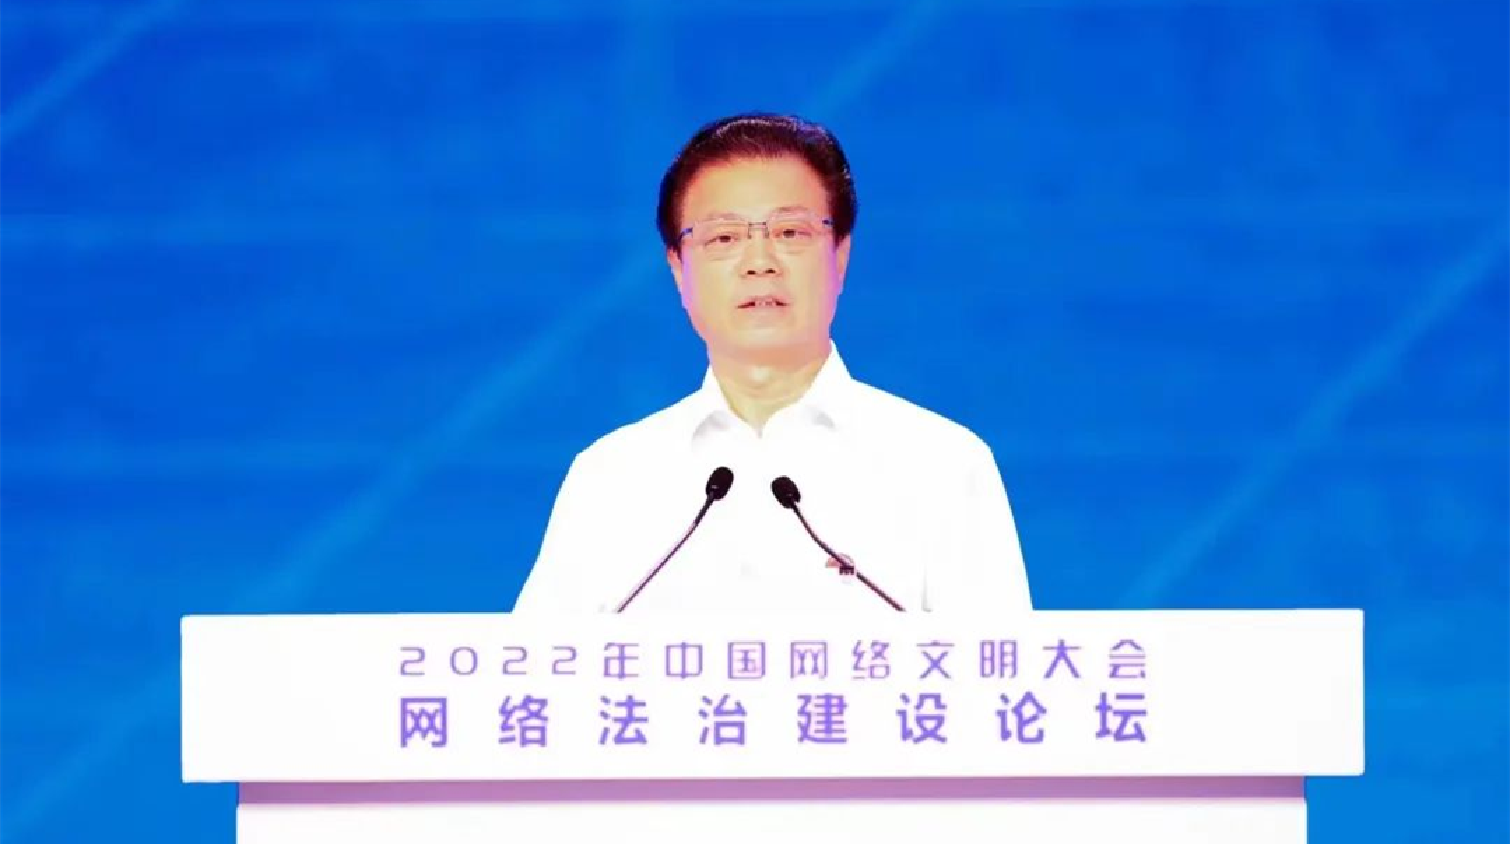 2022年中國網絡文明大會網絡法治建設論壇閉幕